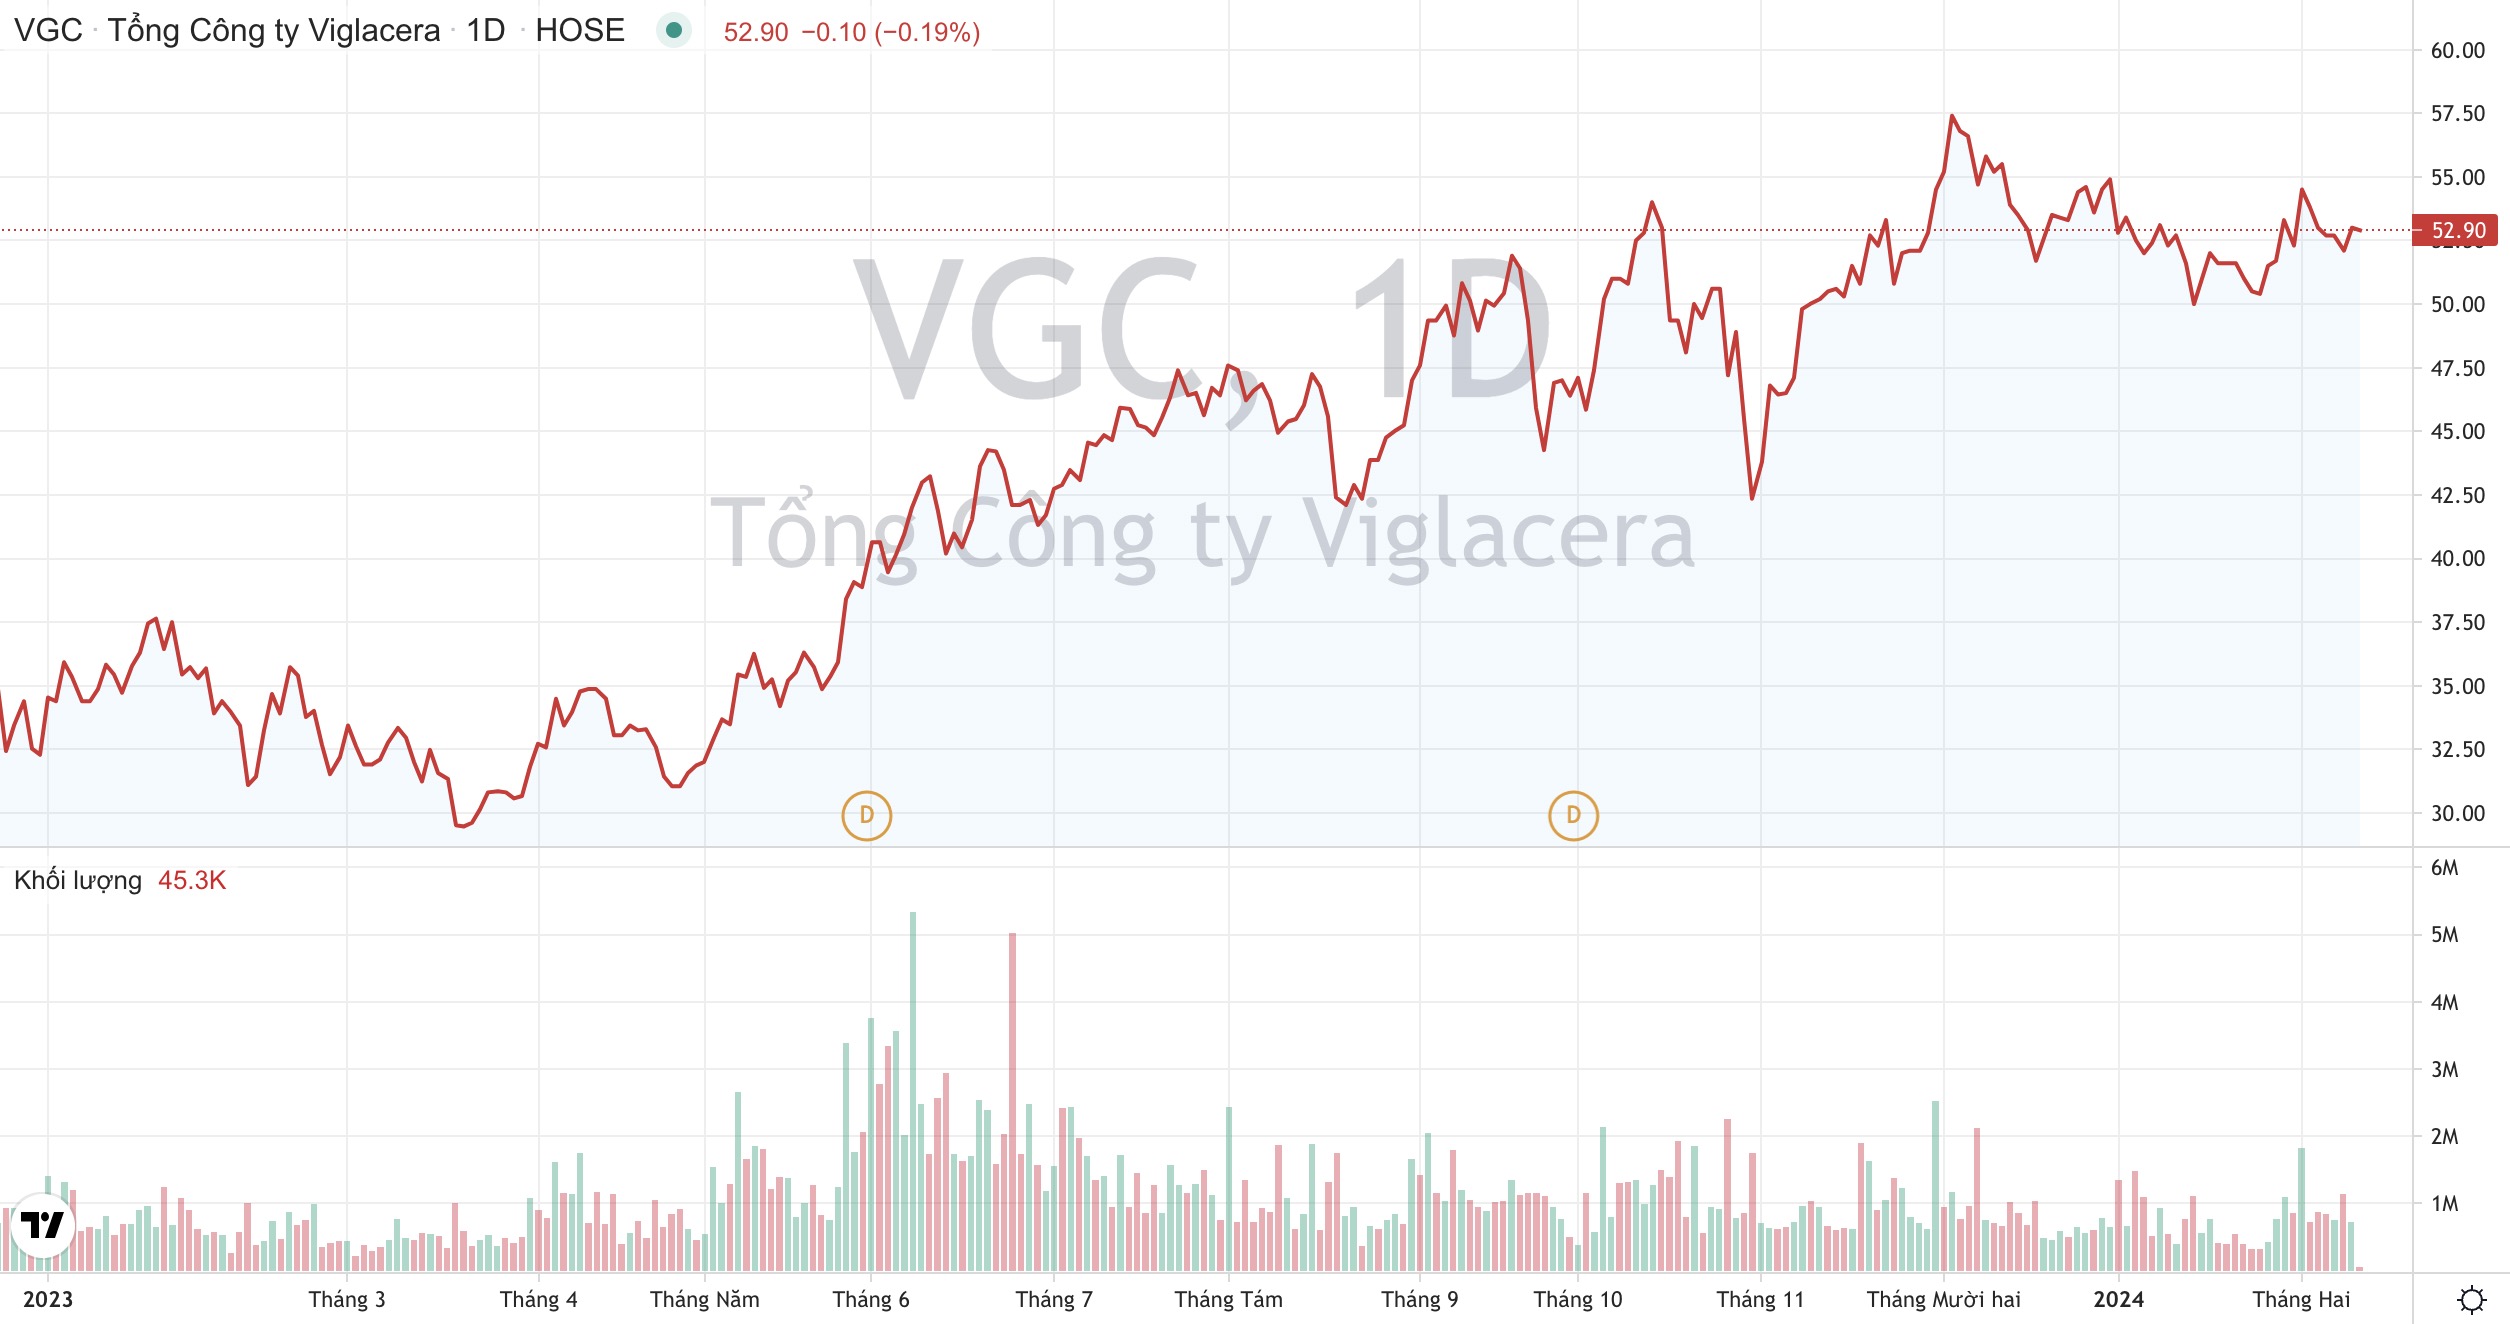 Tổng Công ty Viglacera VGC : Phát triển khu công nghiệp xanh, thông minh quy mô 3.000 tỷ đồng 2